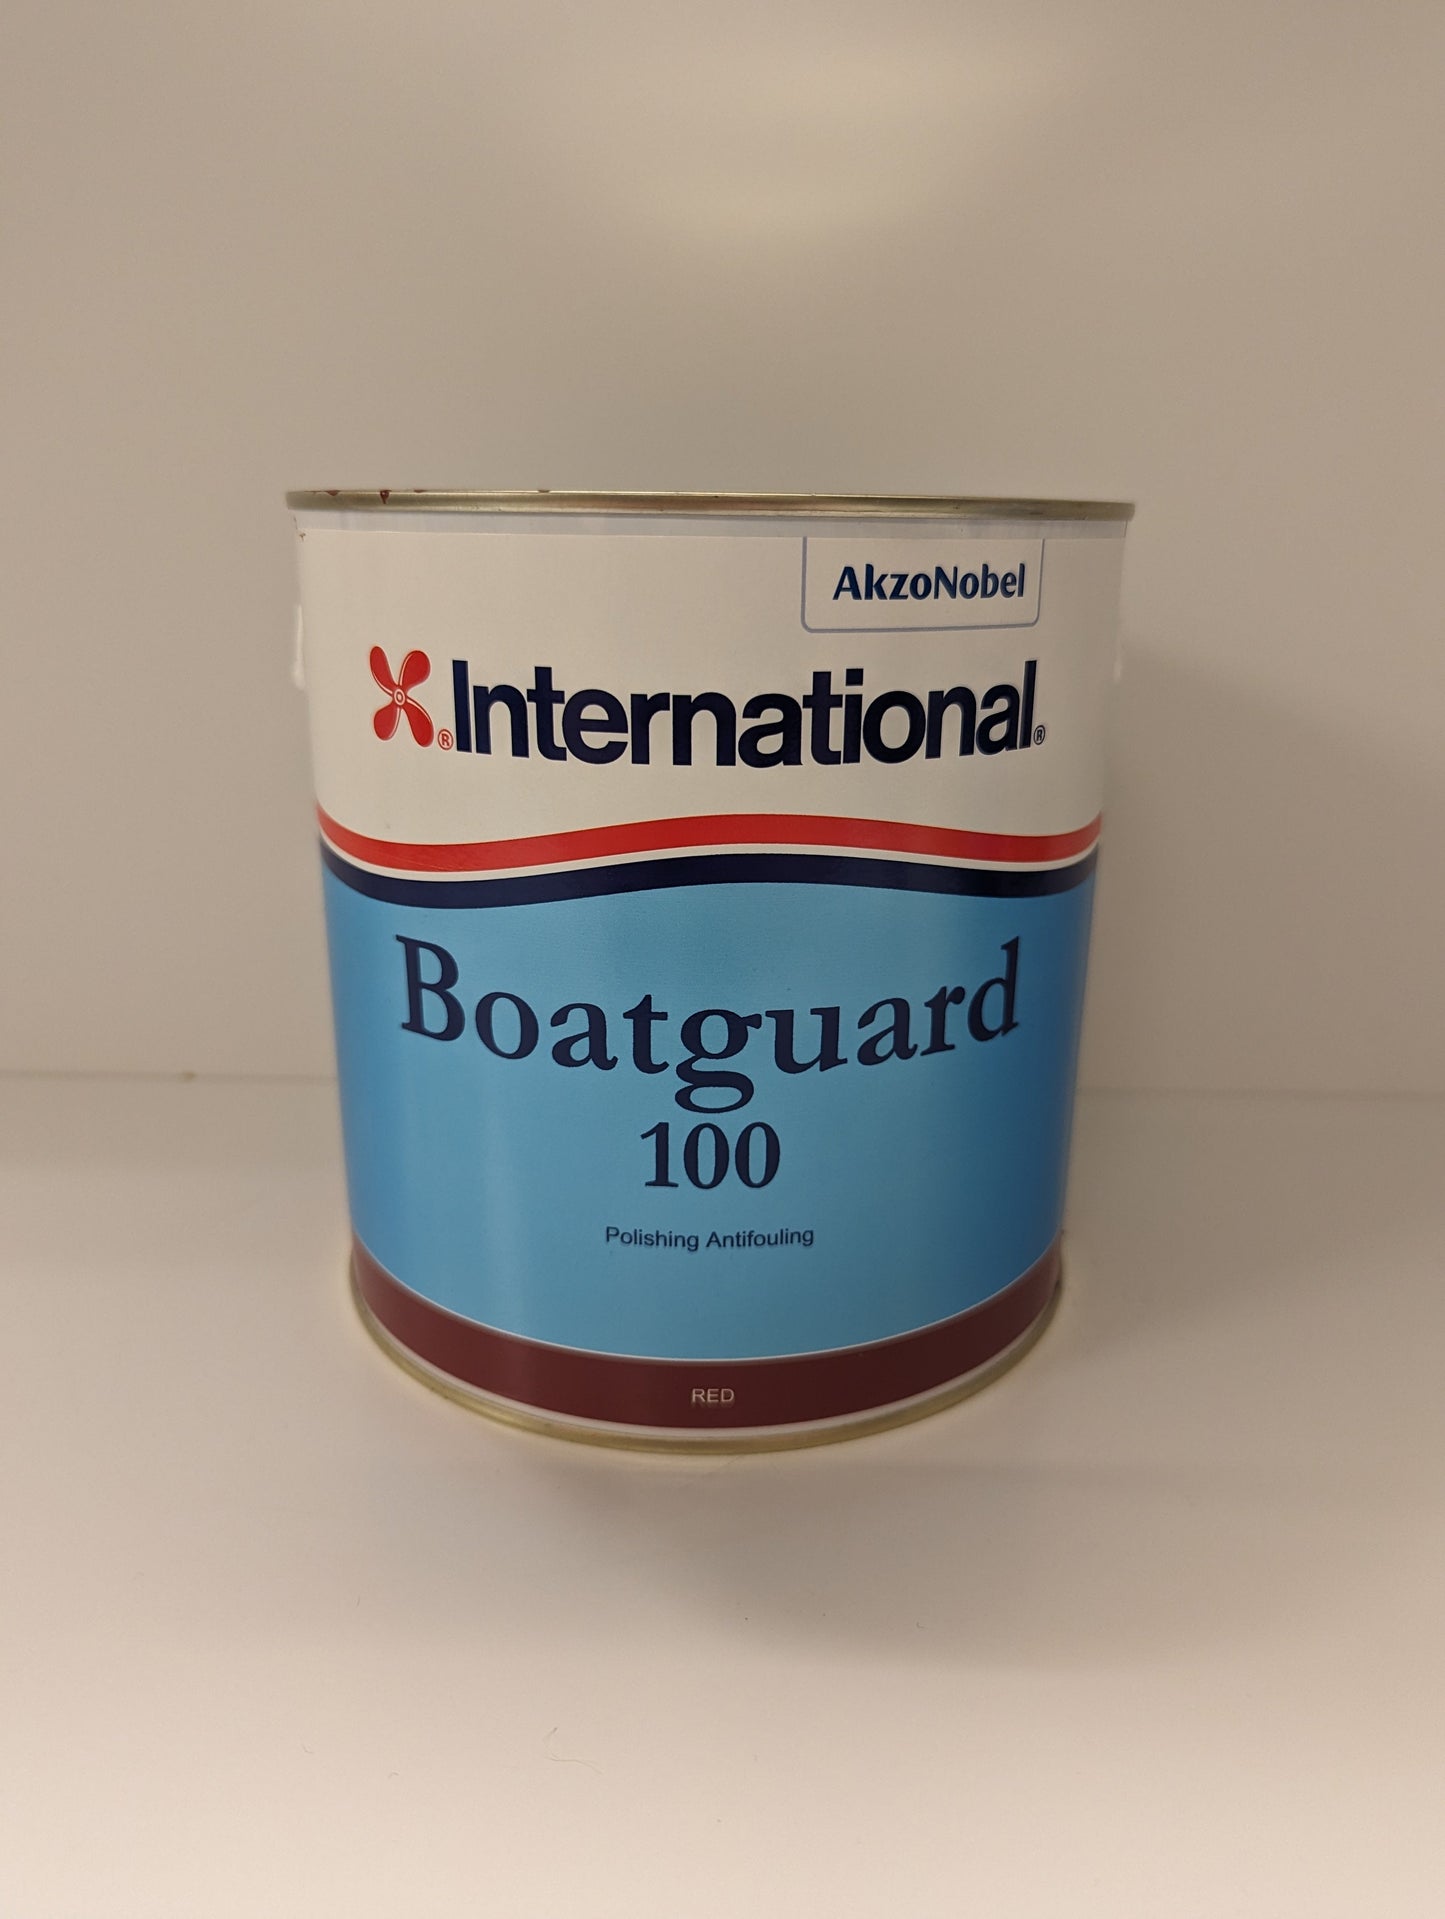 AkzoNobel International Boatguard 100